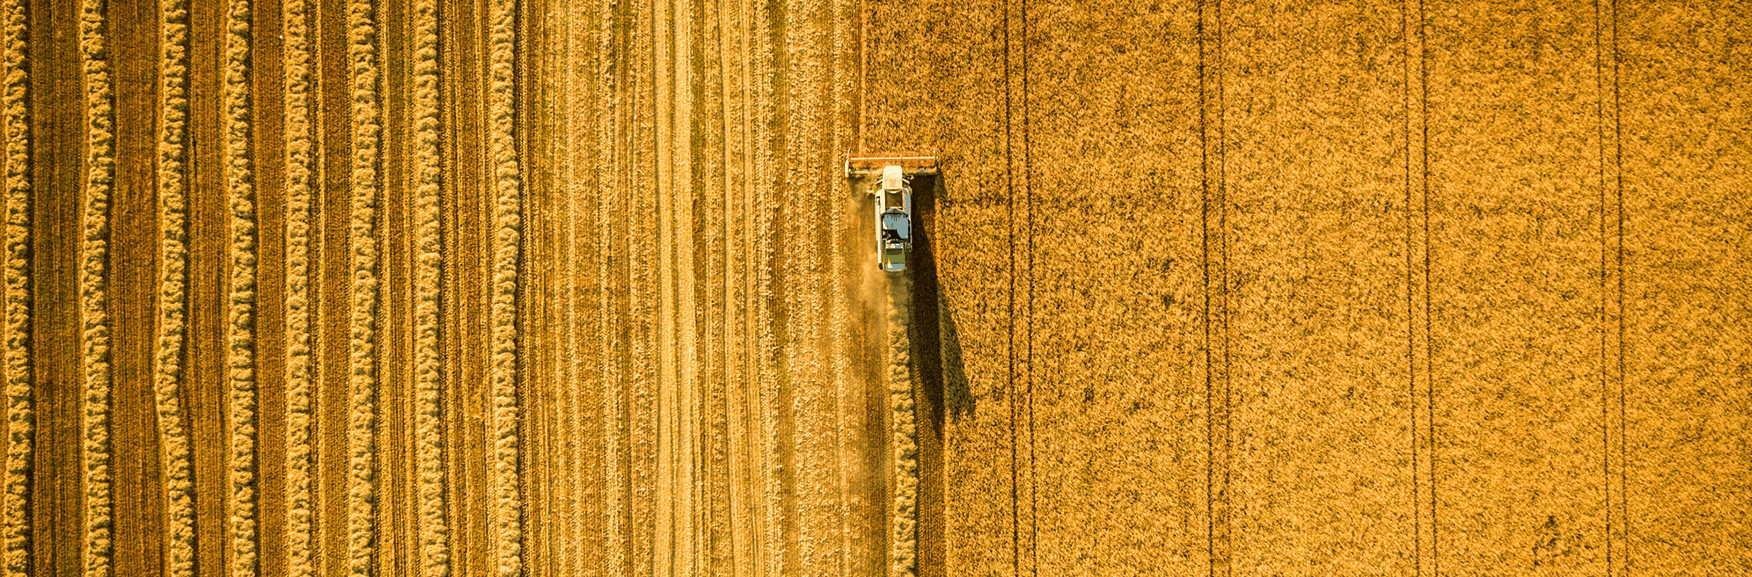 Luftbild eines Weizenfeldes auf dem eine Erntemaschine Weizen erntet
